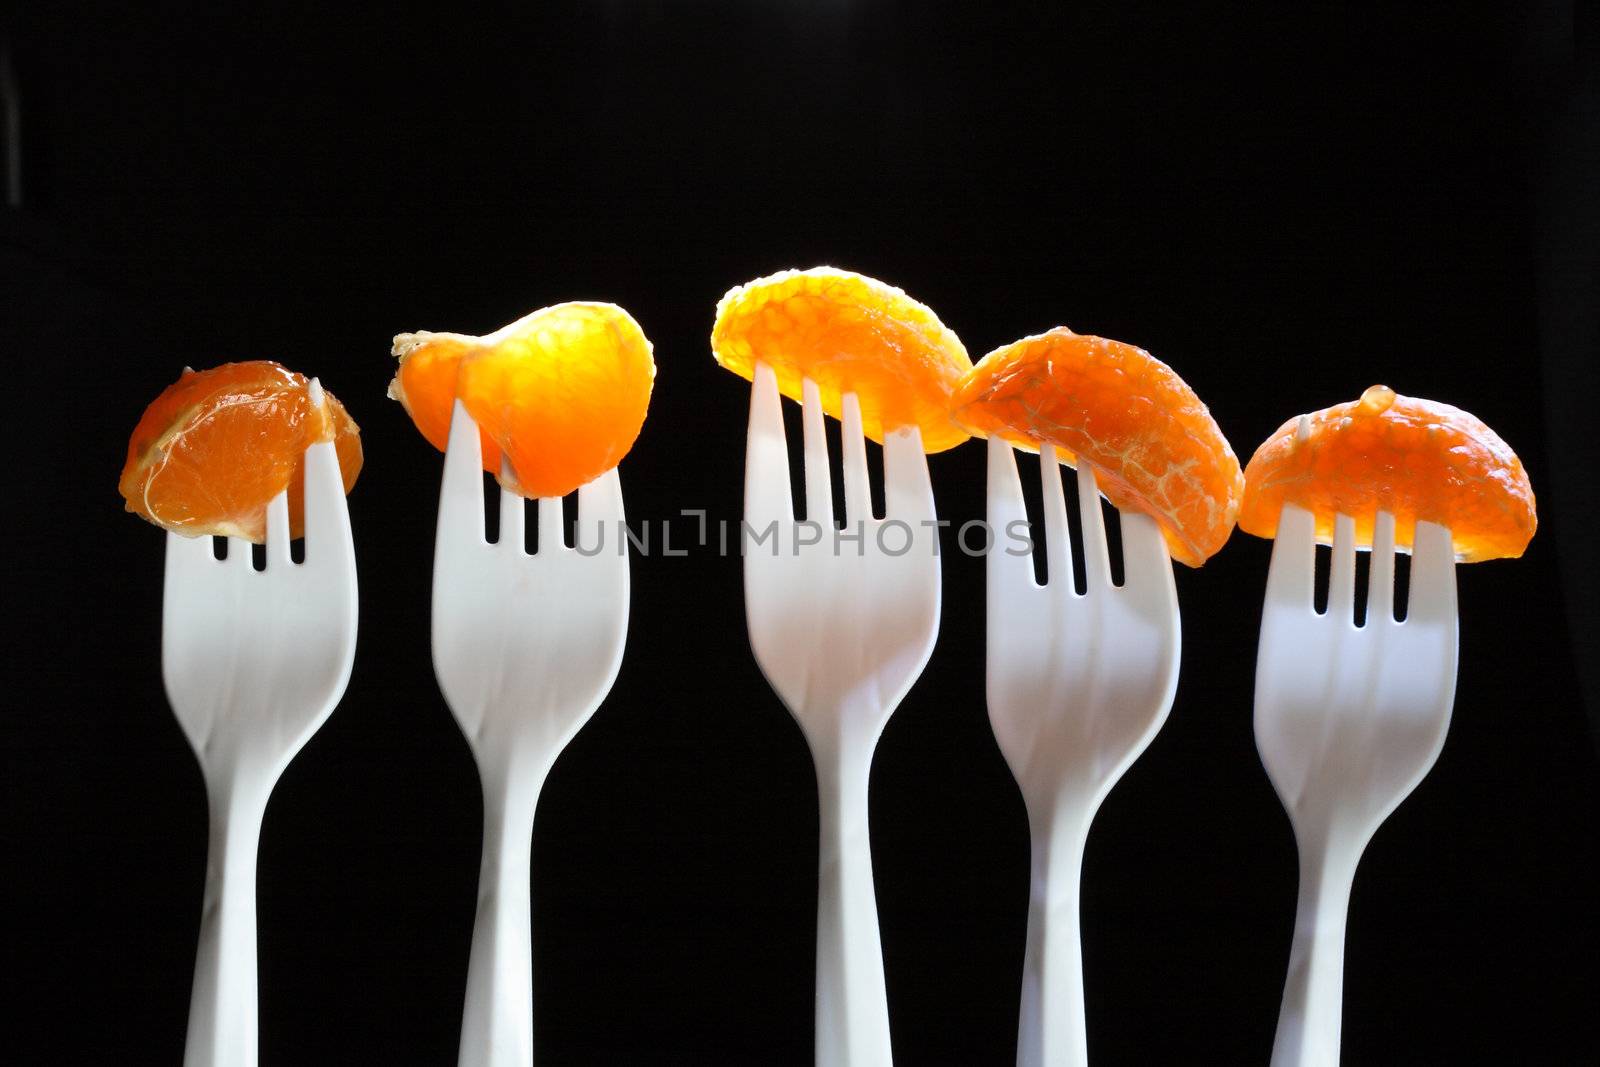 Tangerine Segments by kvkirillov